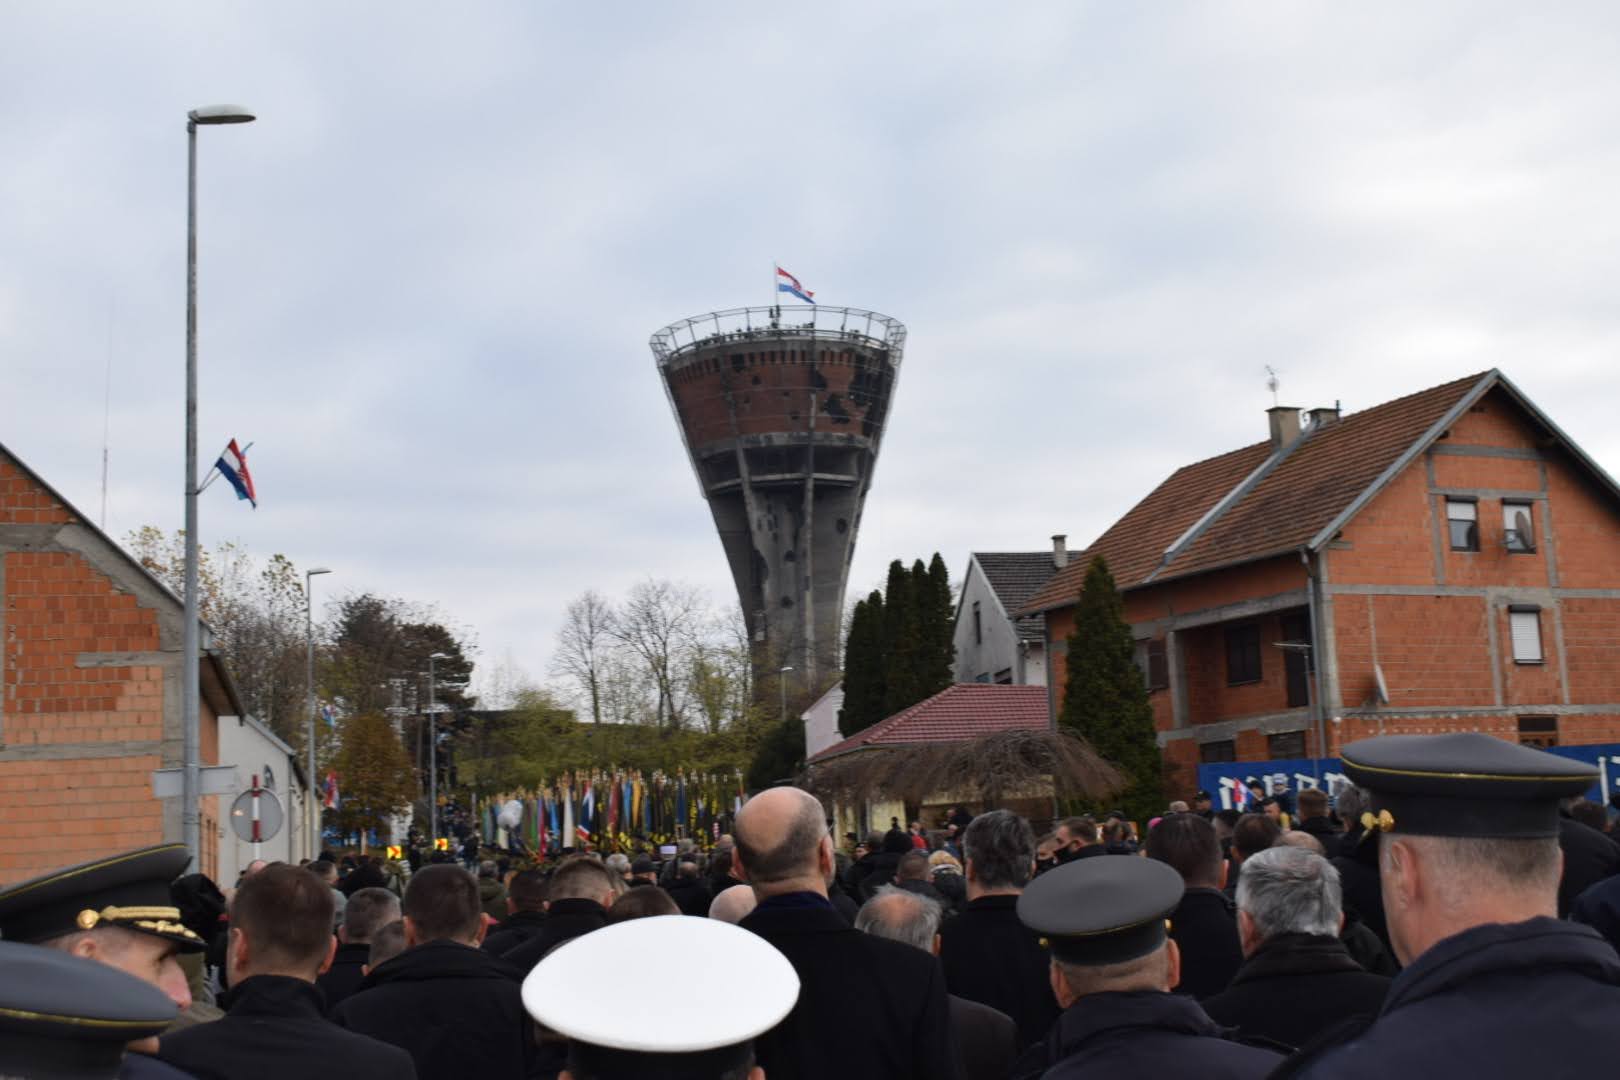 Zamjenik župana Mihael Jurić je u četvrtak, 18. studenoga 2021. godine, u Vukovaru sudjelovao u obilježavanju Dana sjećanja na žrtvu Vukovara 1991. godine.